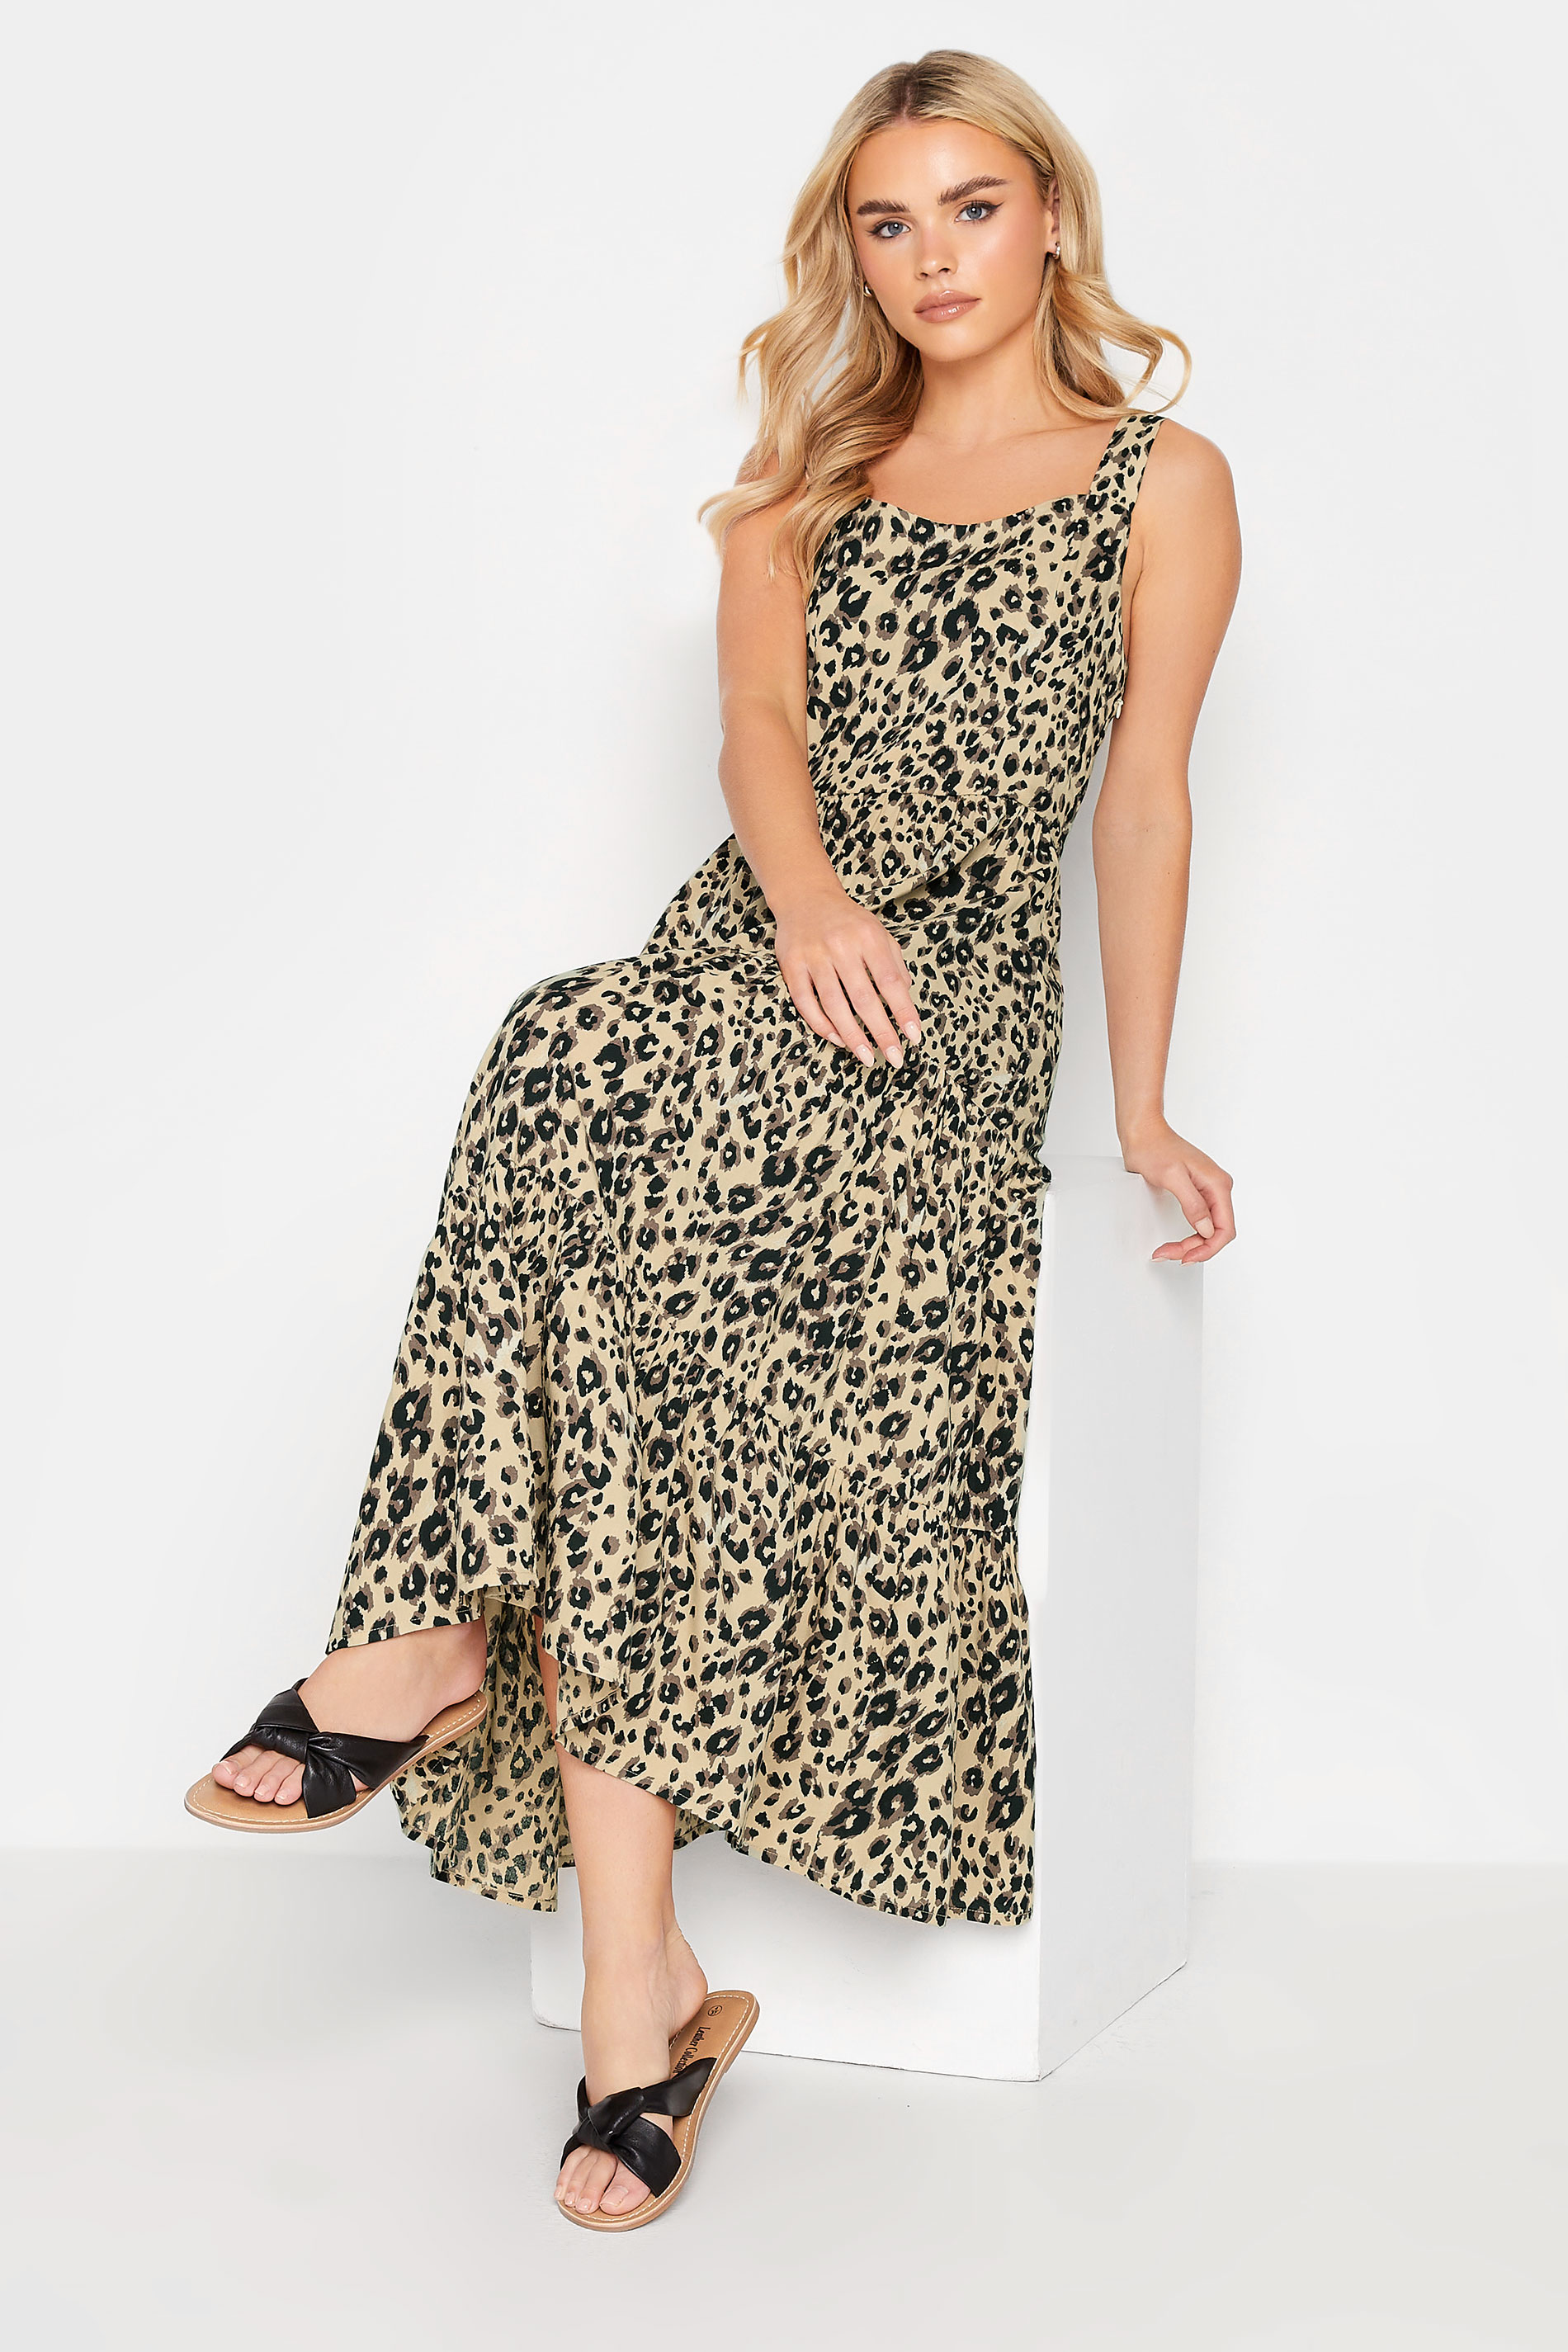 PixieGirl Brown Leopard Print Tiered Midaxi Dress | PixieGirl 2